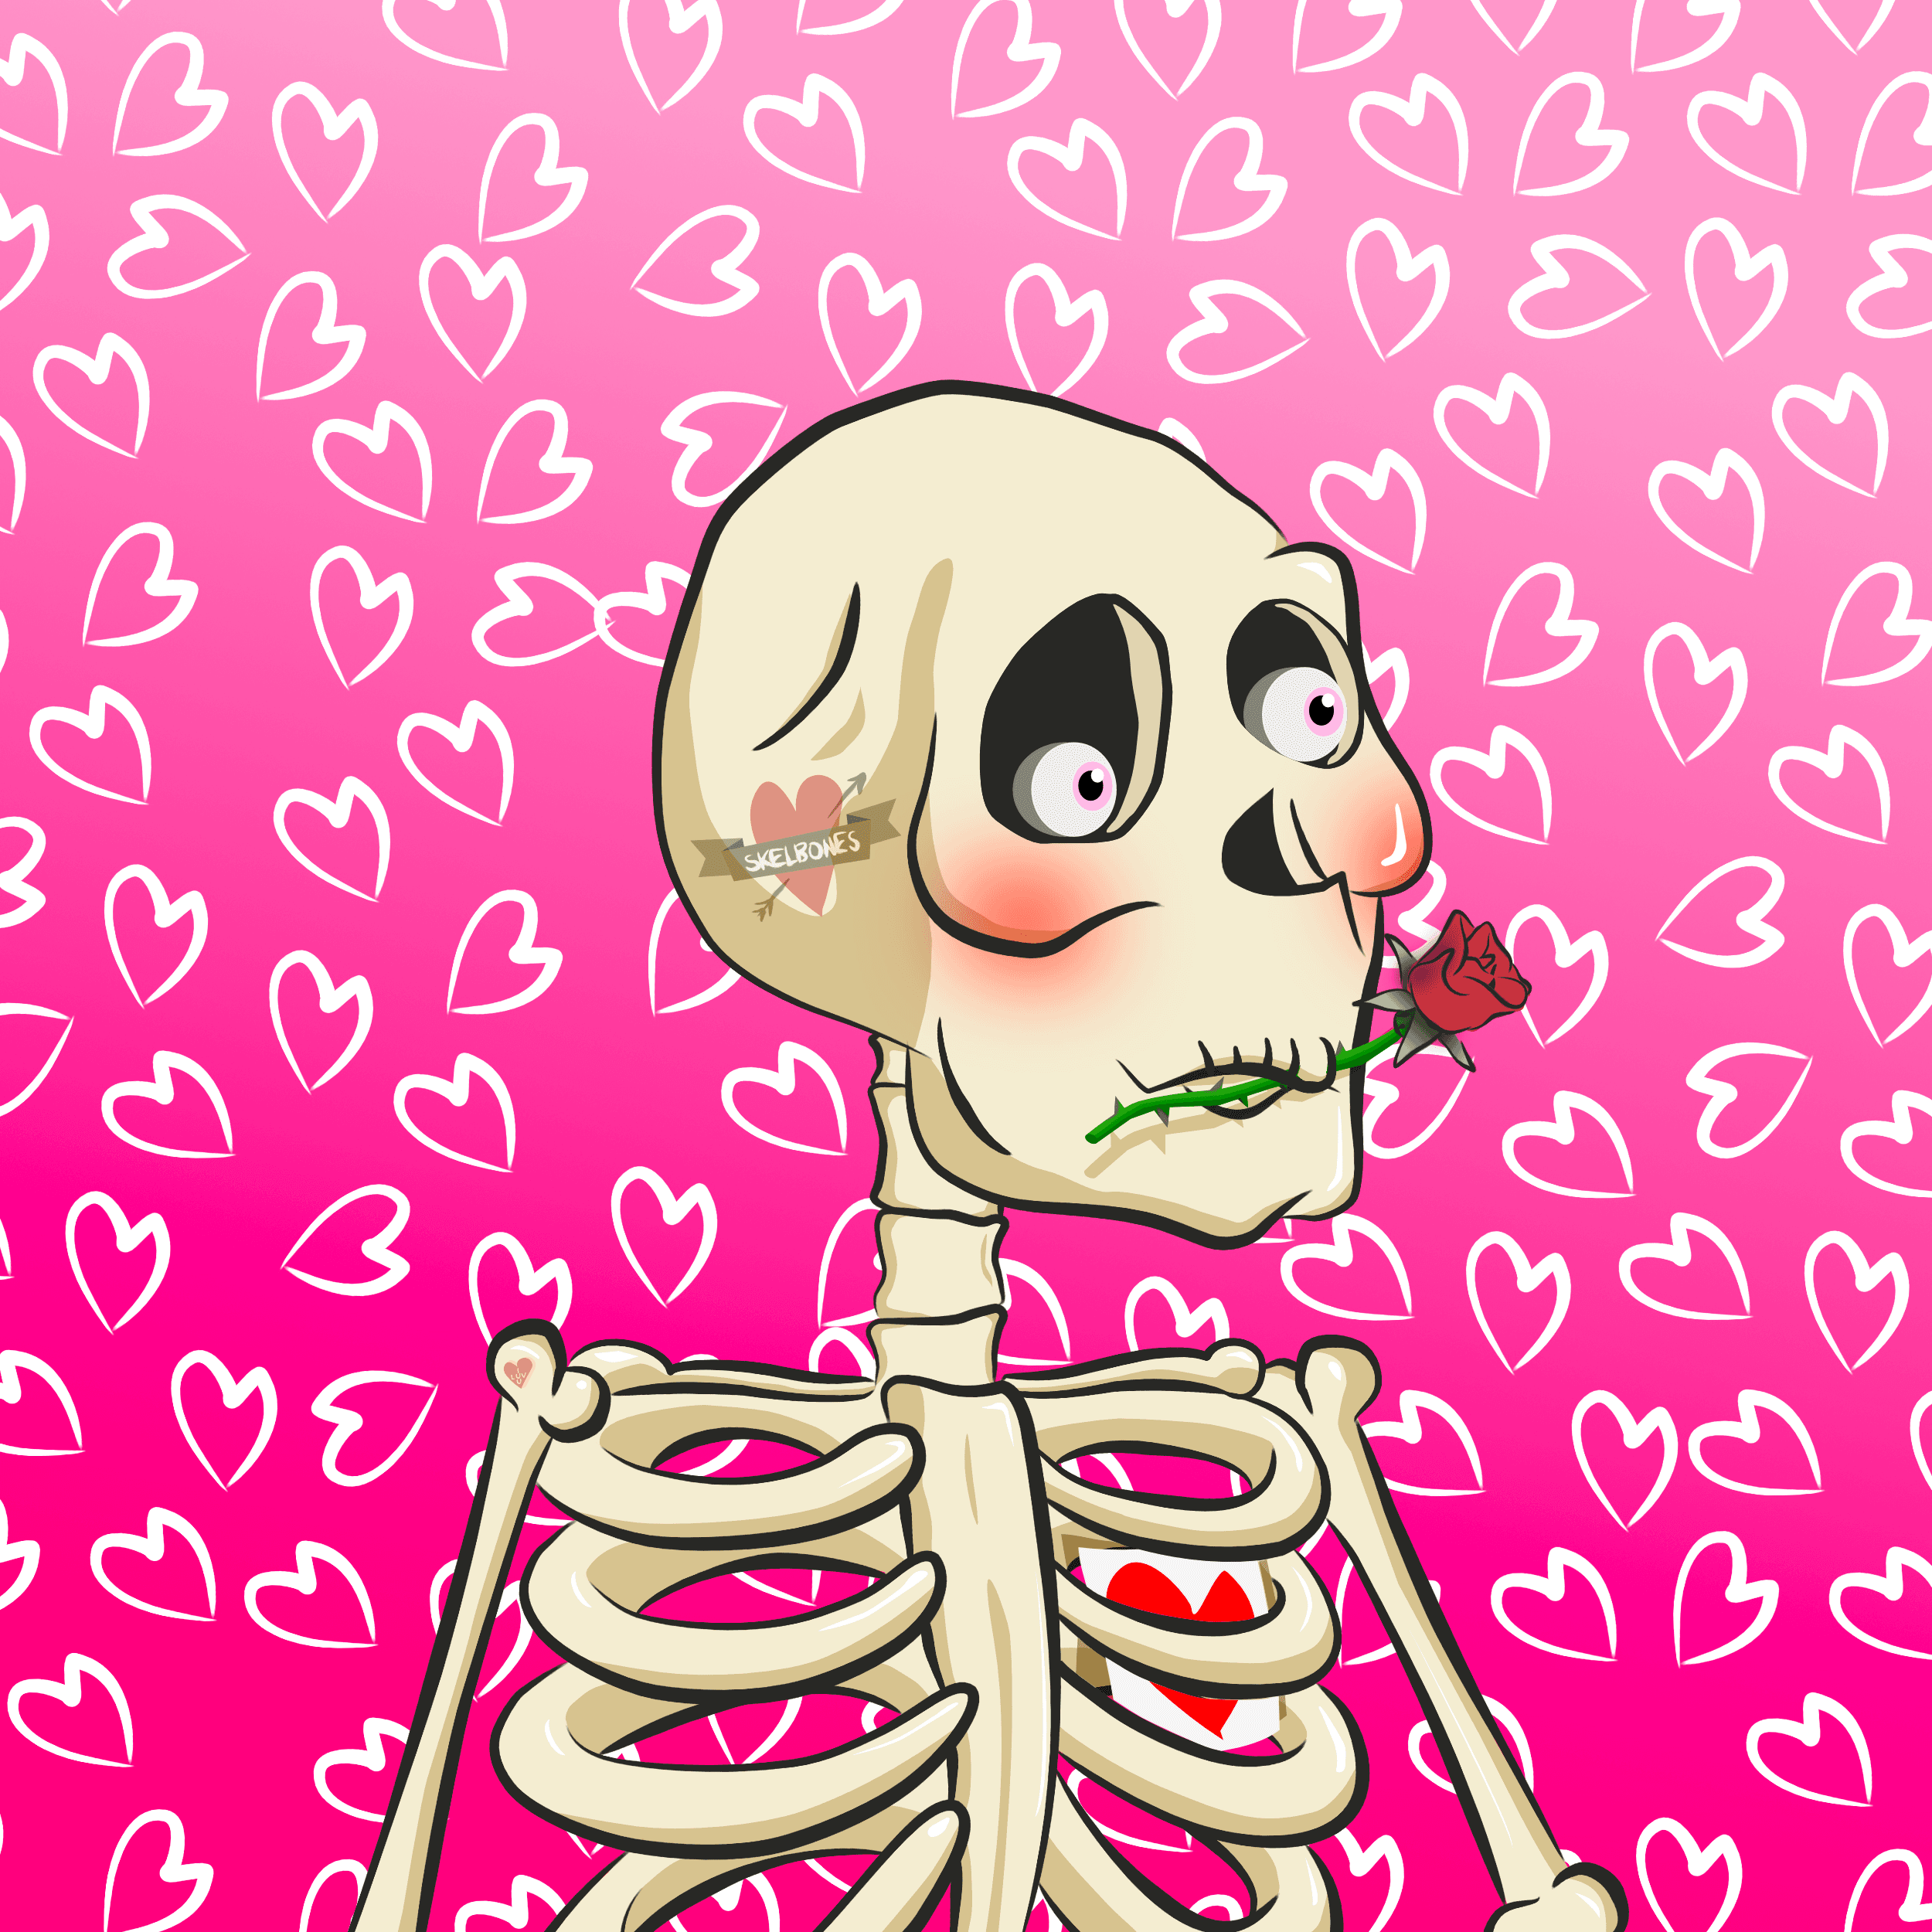 Skelbones Specials Valentine